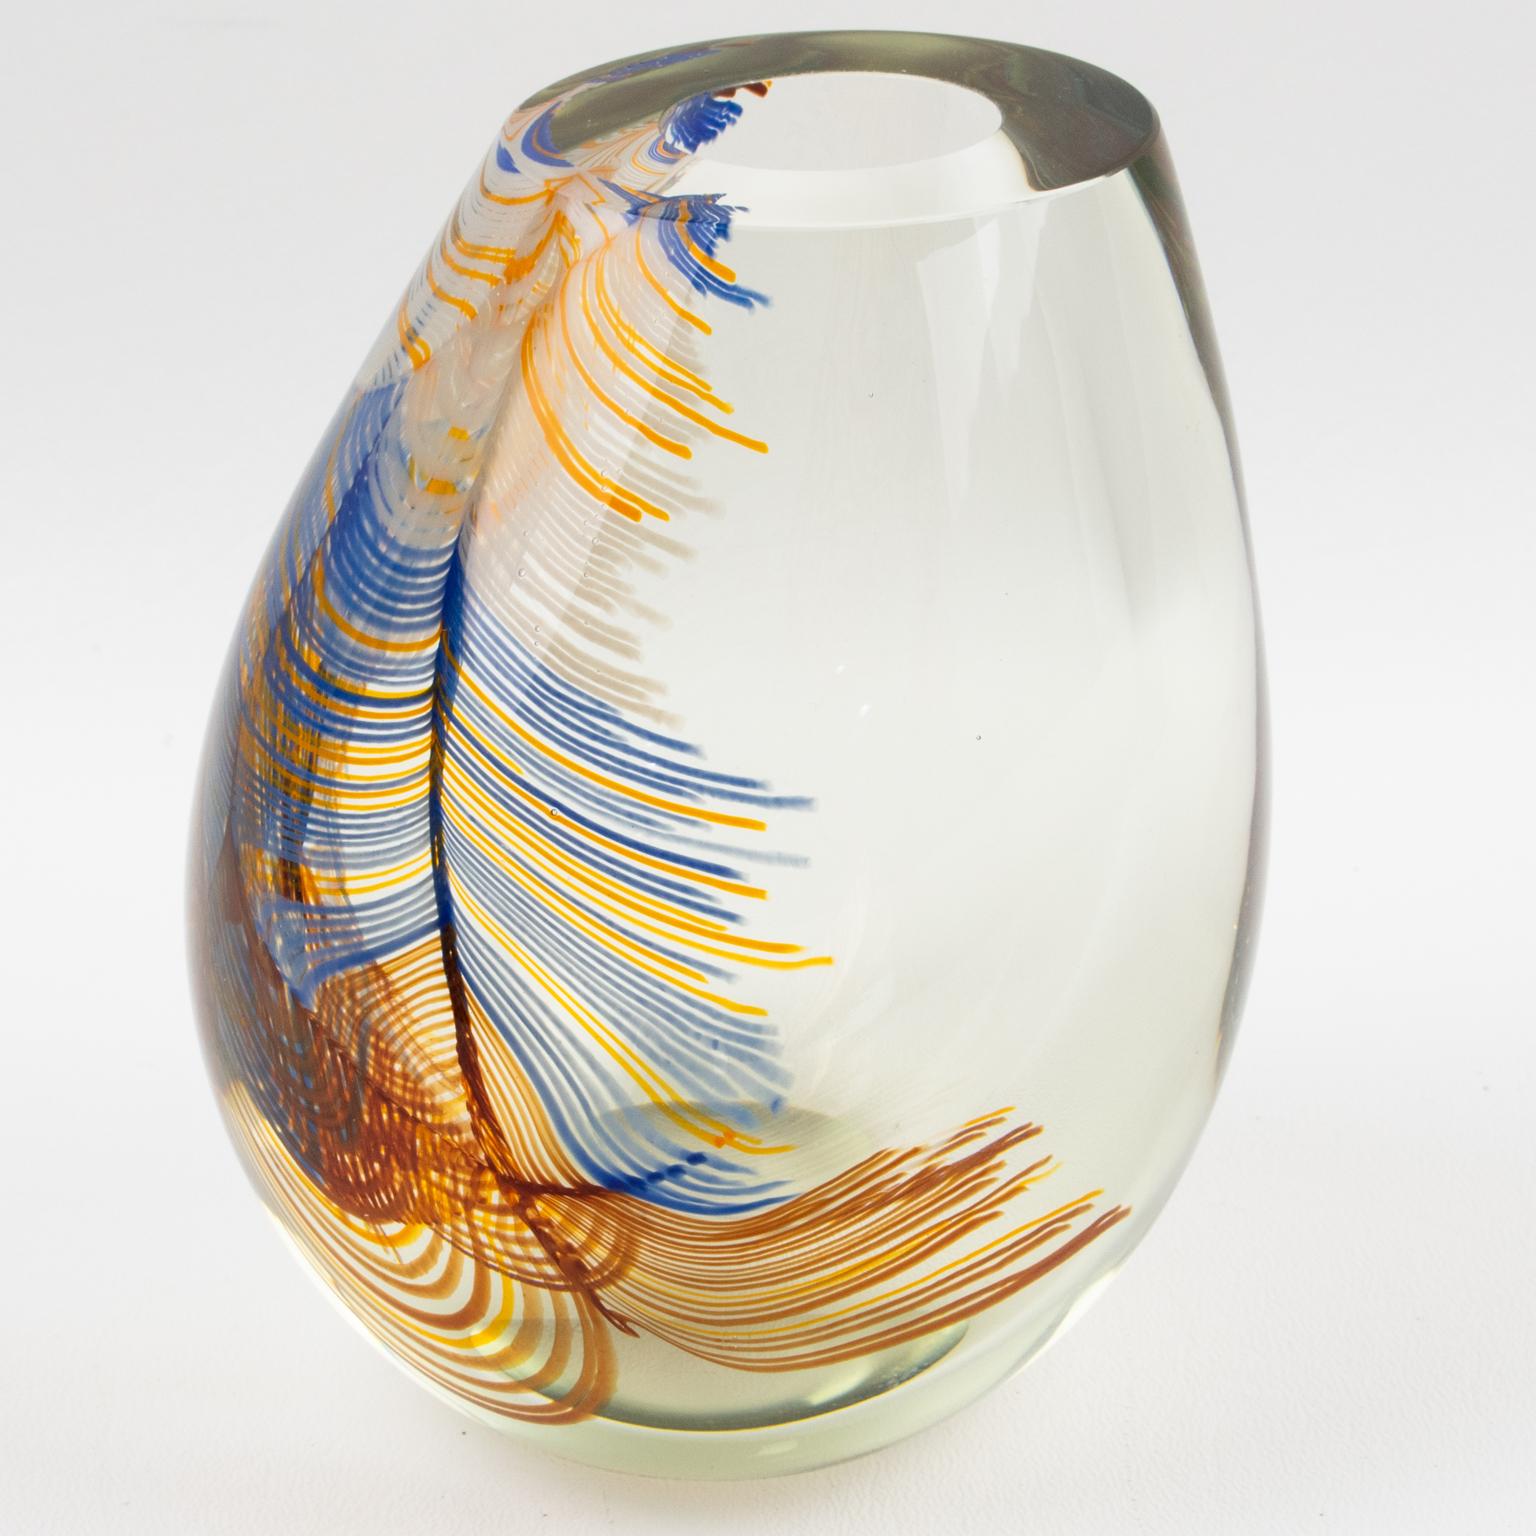 Fascinant vase en verre d'art moderne soufflé à la bouche par Stephen Stephens, Californie 1979. Ce magnifique verre fait à la main est unique par rapport à tout ce qui a été créé dans son Studio.
Ce vase présente une forme sculpturale bulbeuse,